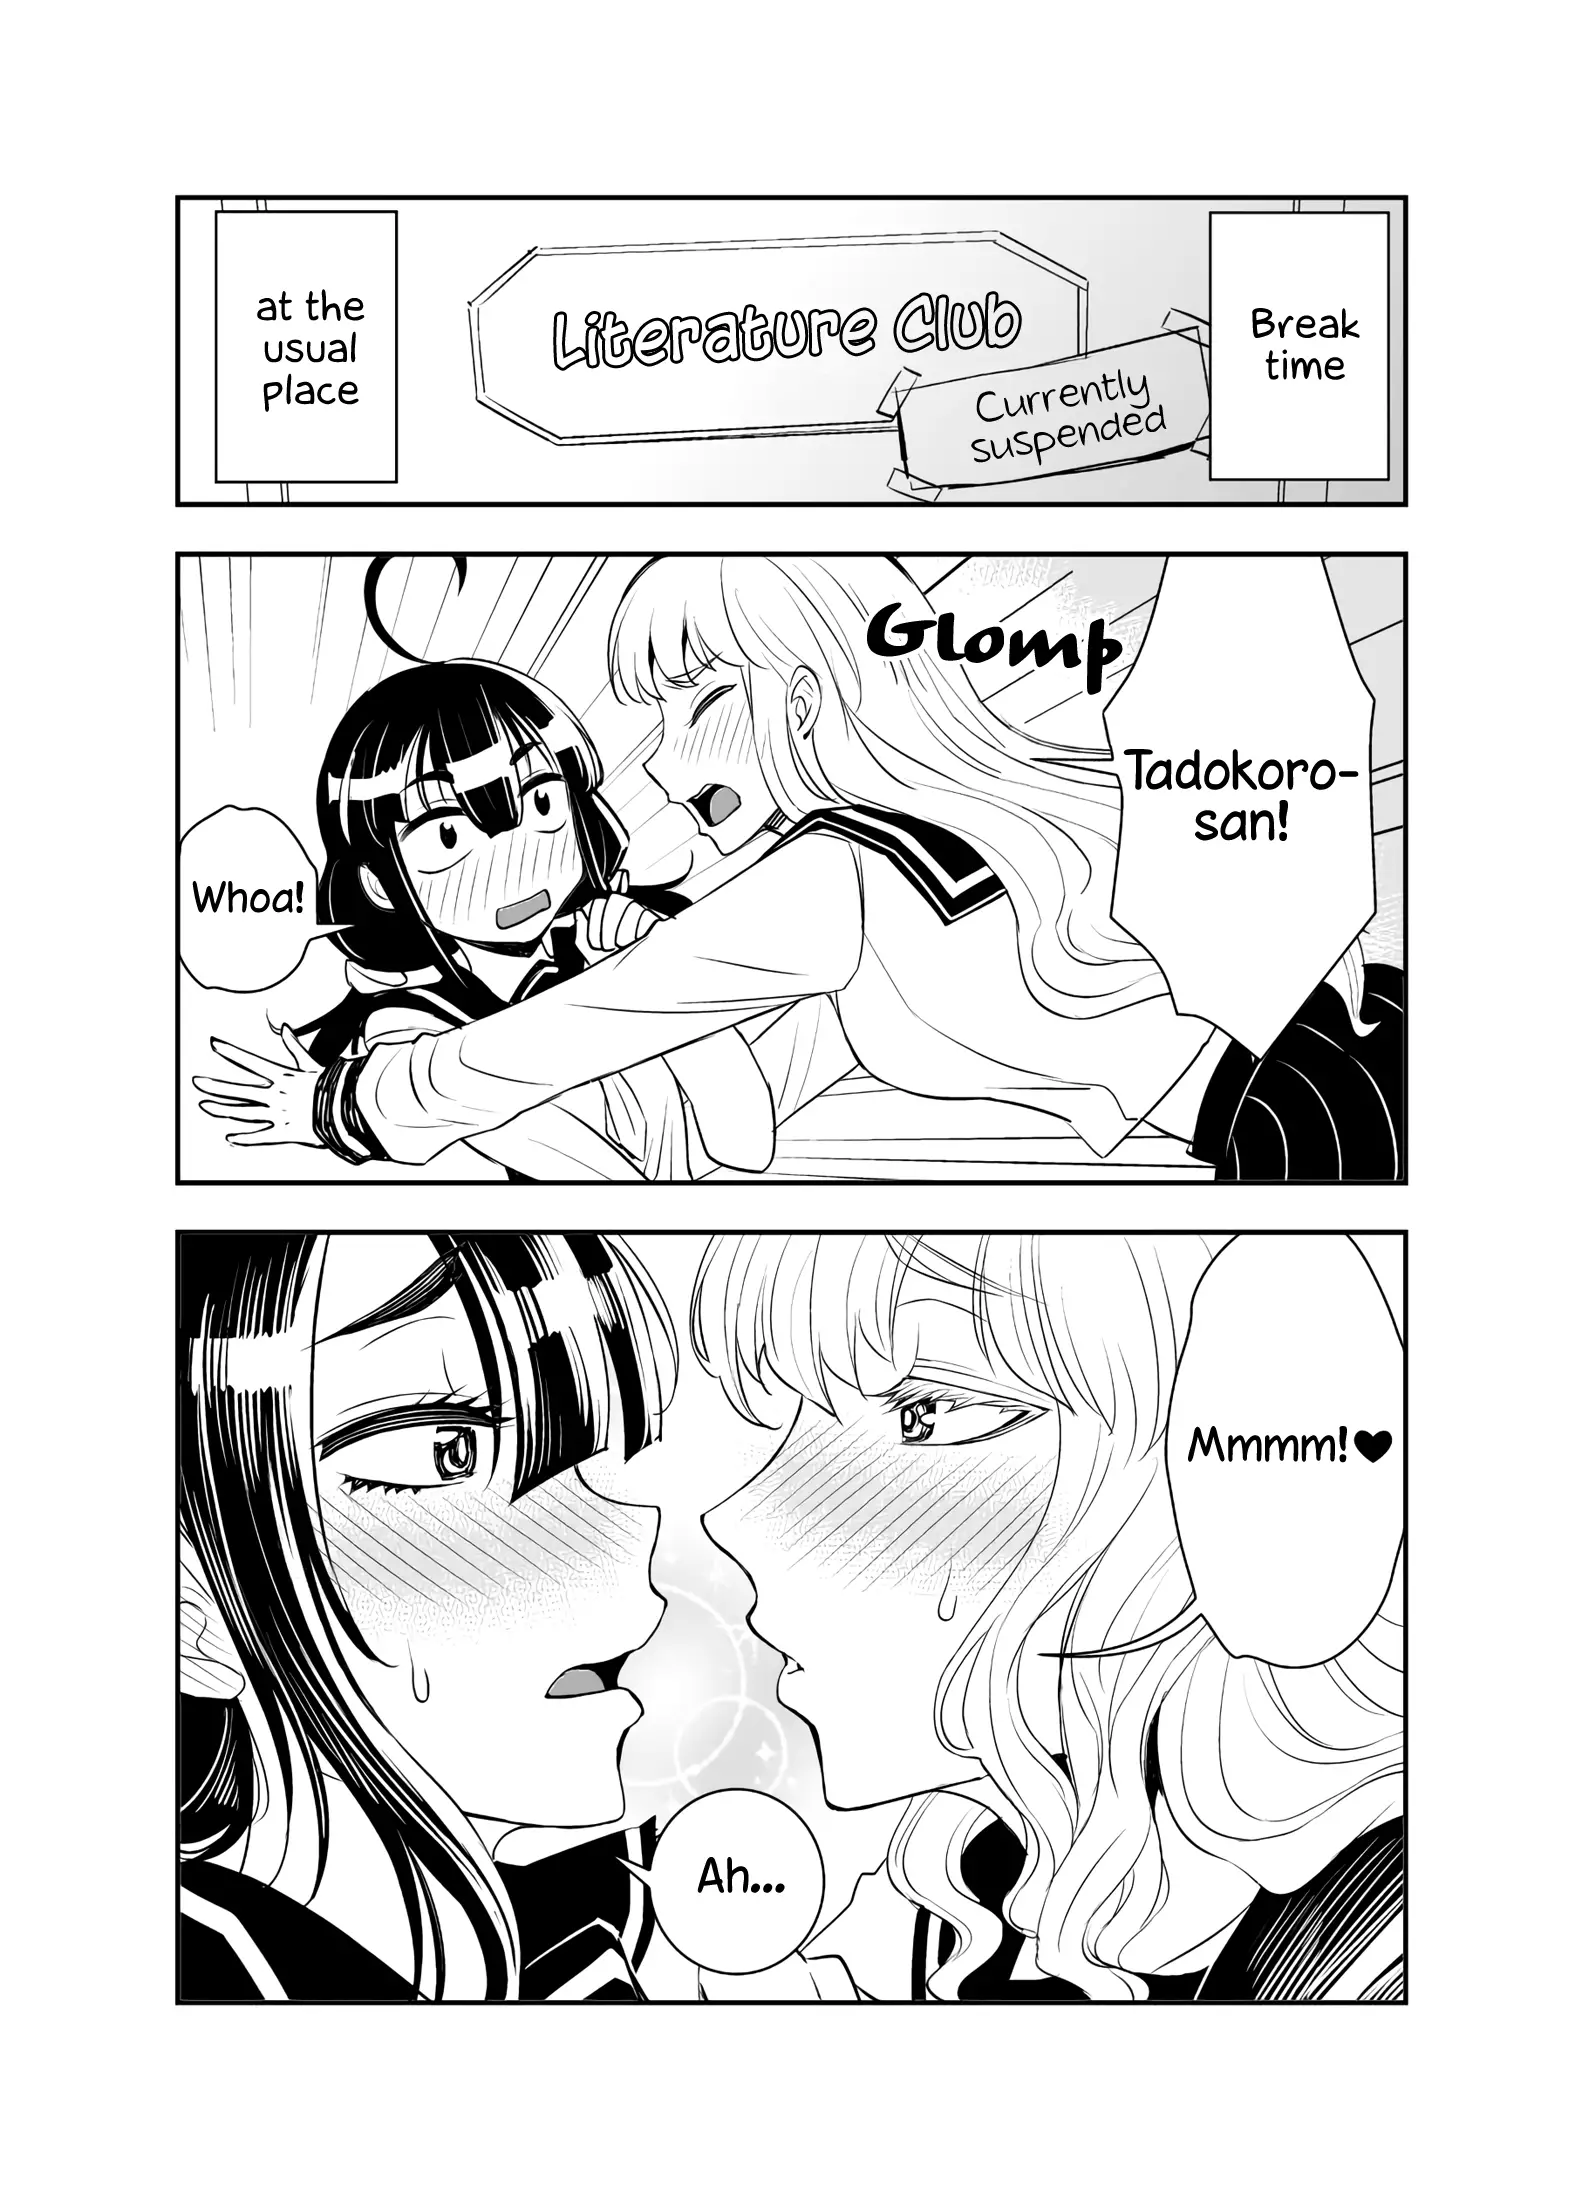 Tadokoro-san - 20 page 2